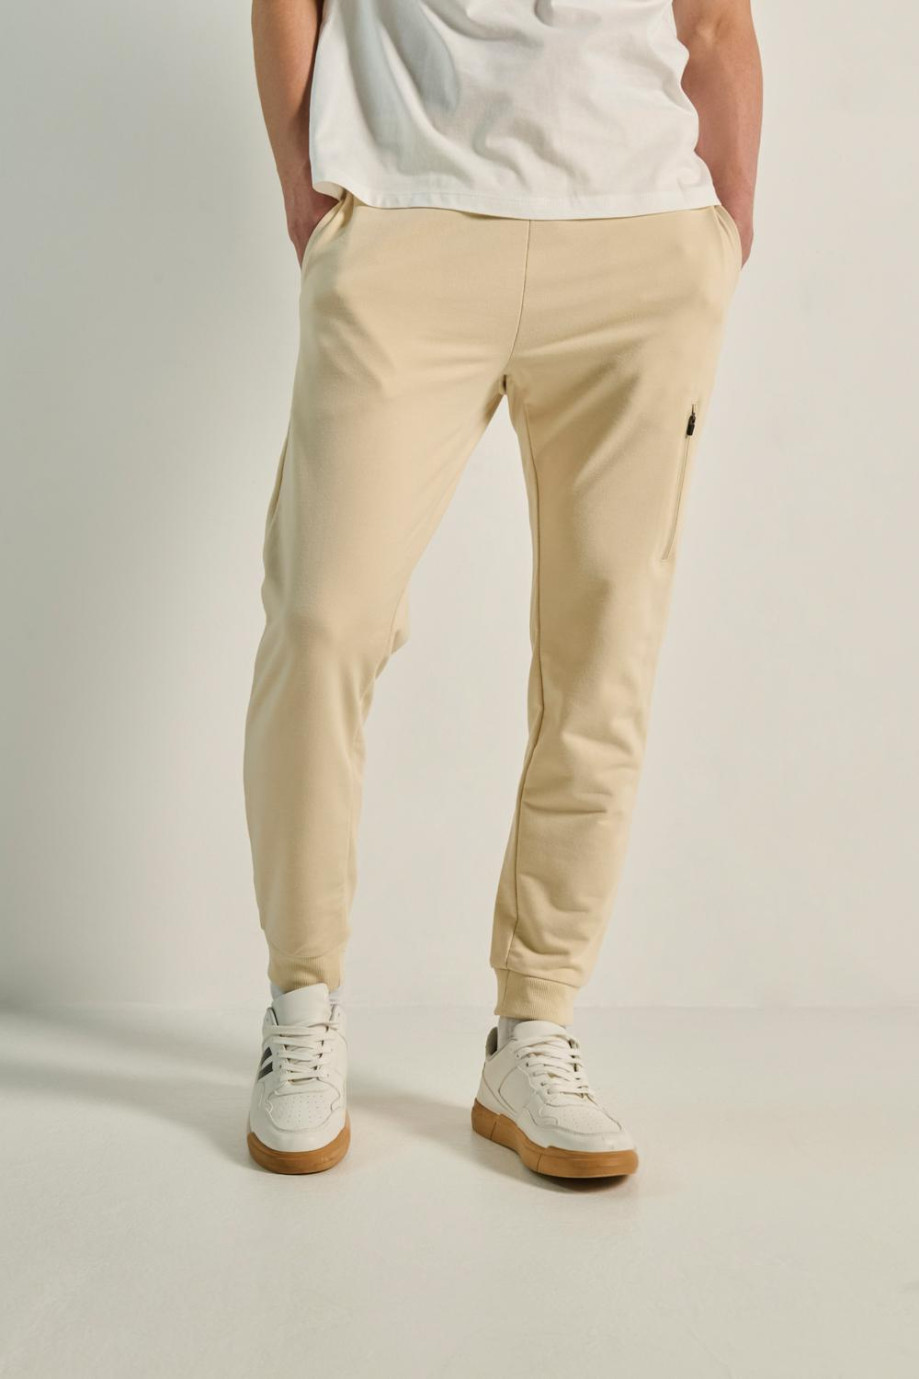 Pantalón jogger kaky ajustado con cremallera decorativa